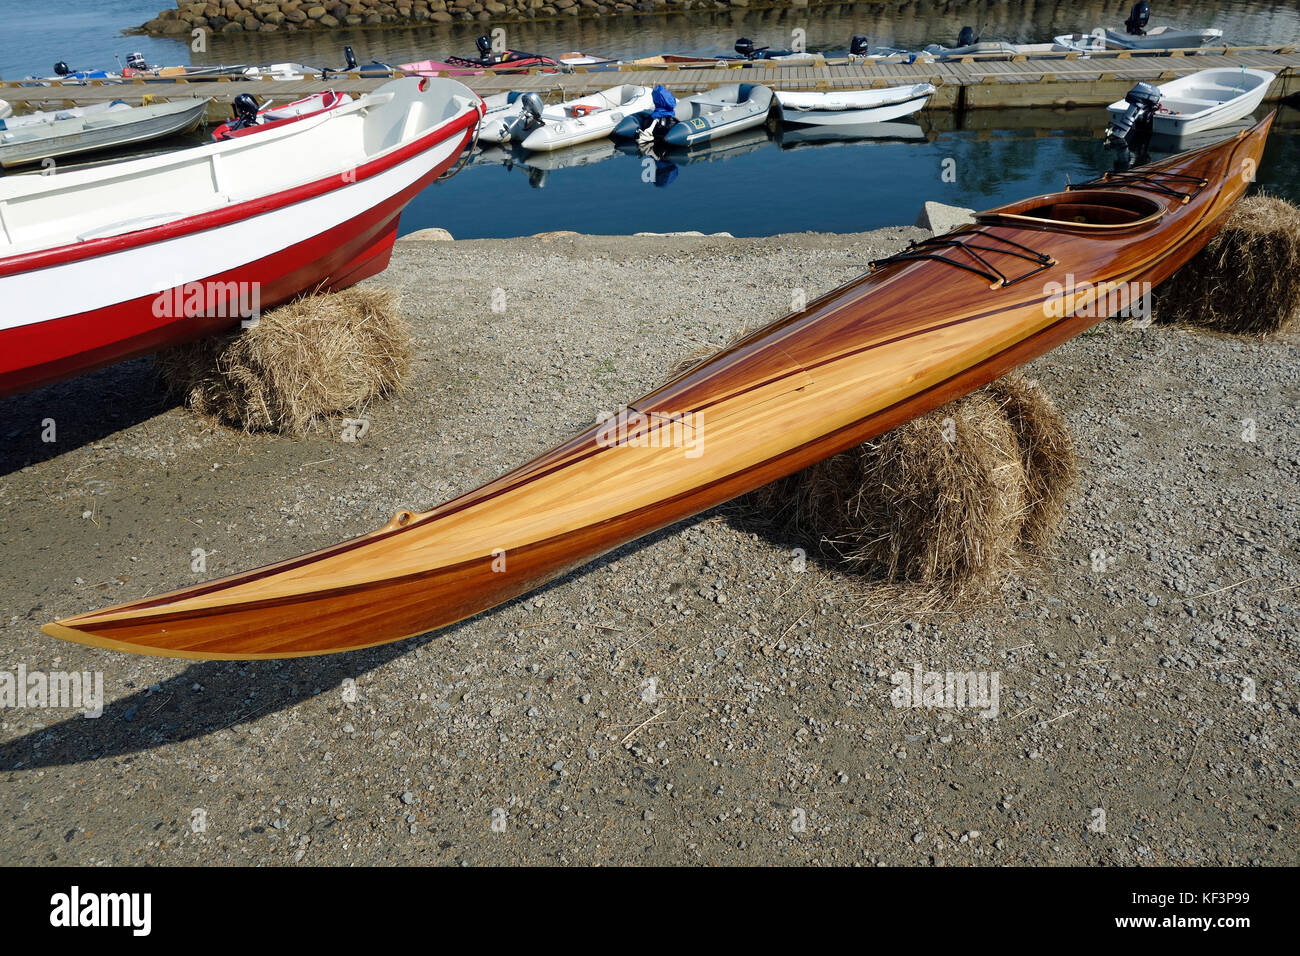 Ein Kajak Kanu aus Holz Stockfotografie - Alamy